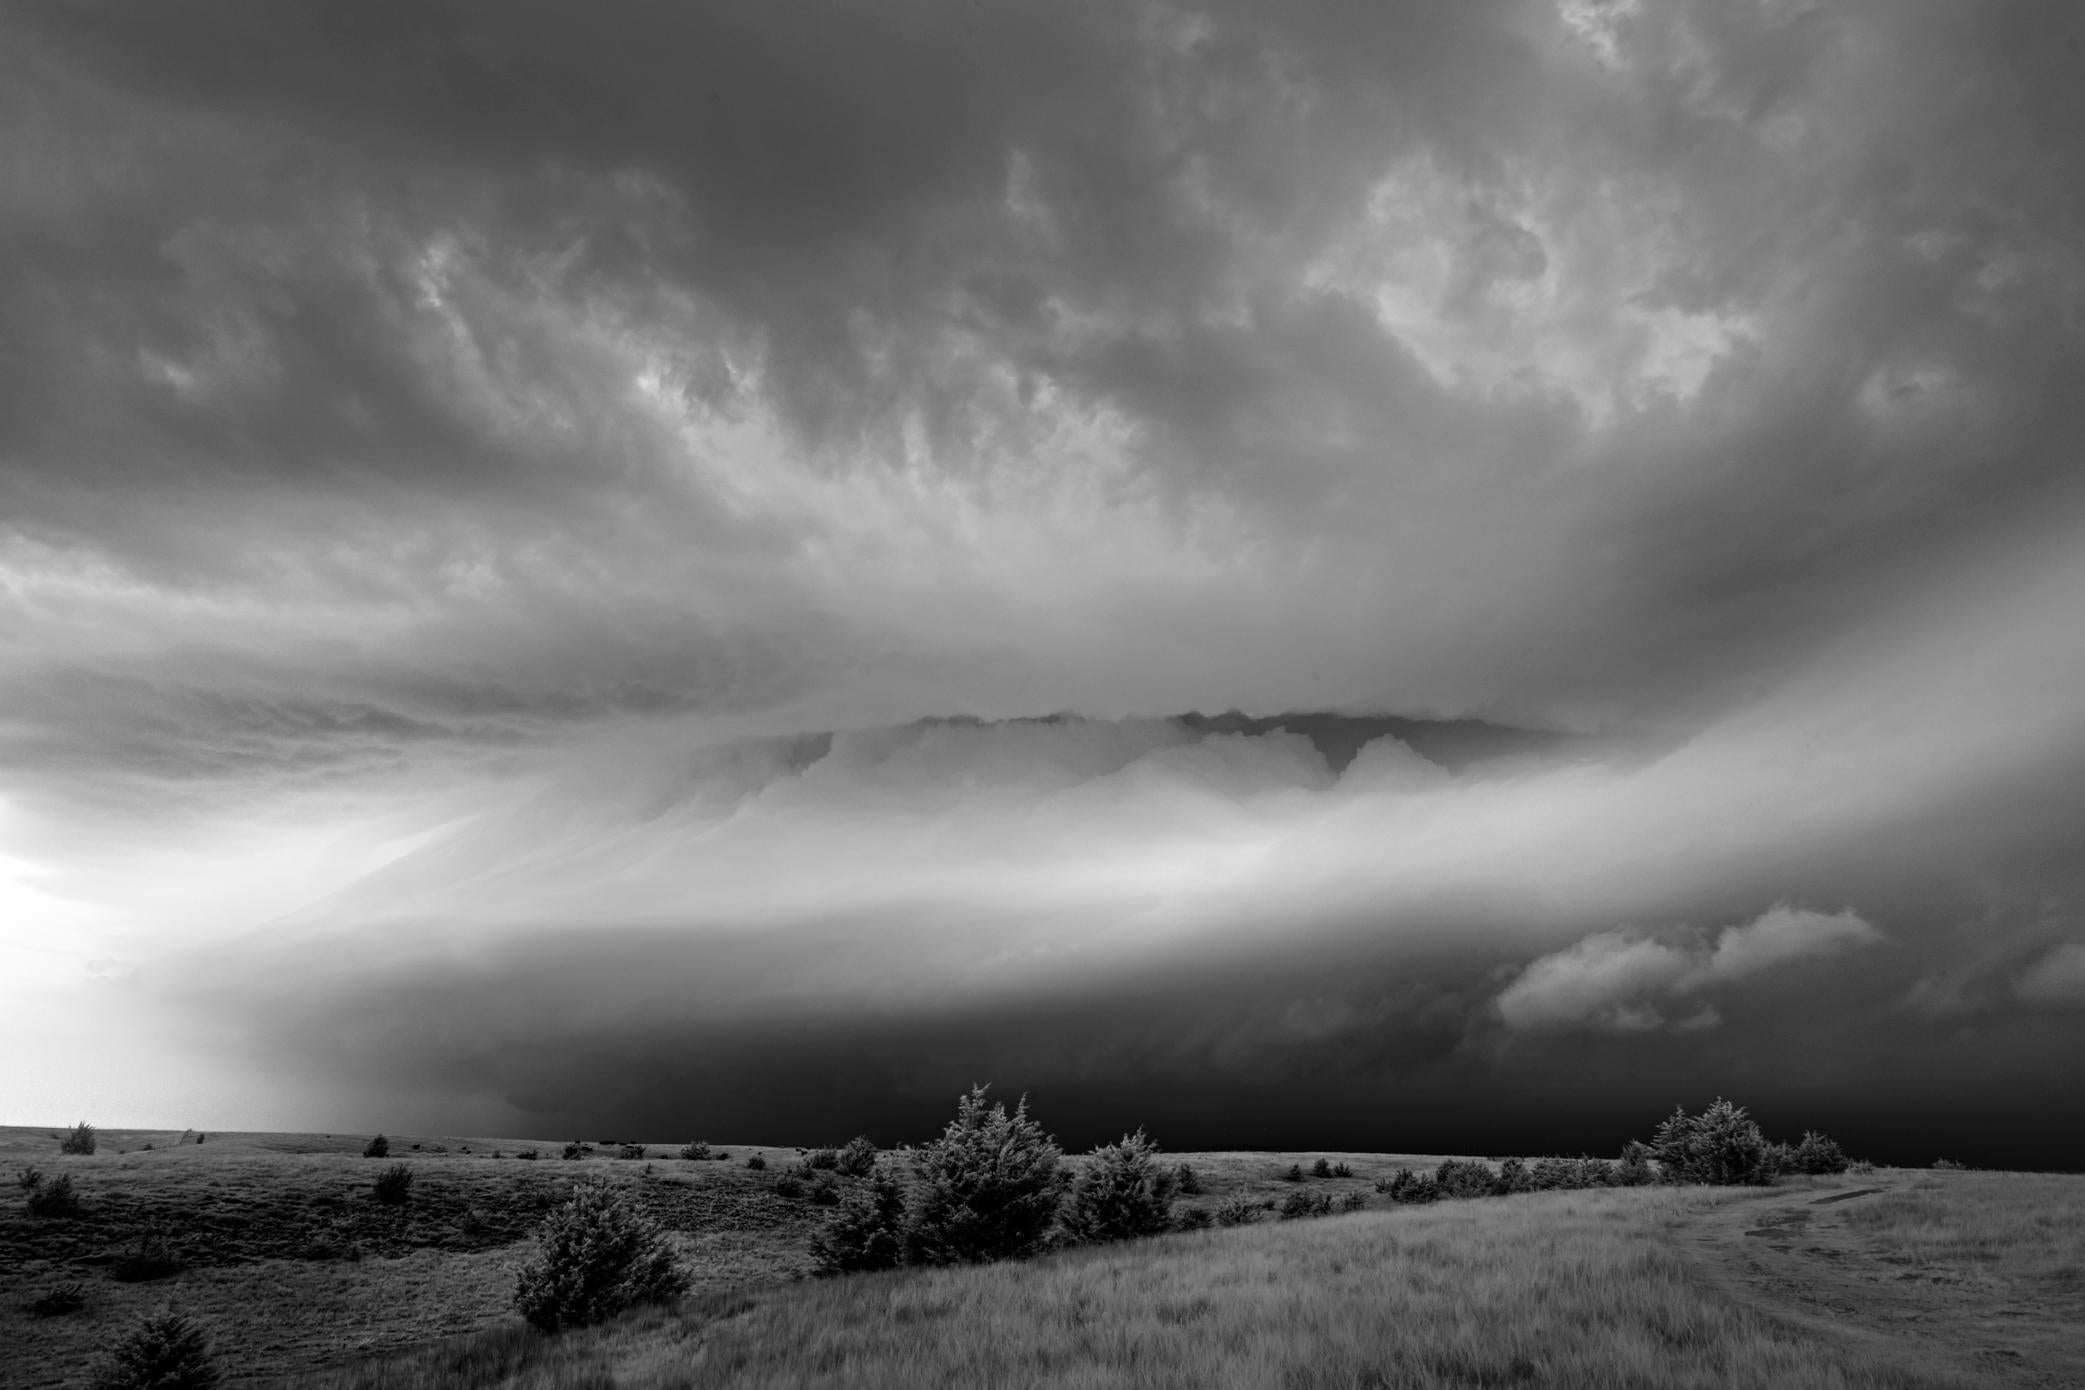 Mitch Dobrowner Black and White Photograph – Cloud with Wings, Fotografie in limitierter Auflage, signiert und nummeriert, archivtauglich 